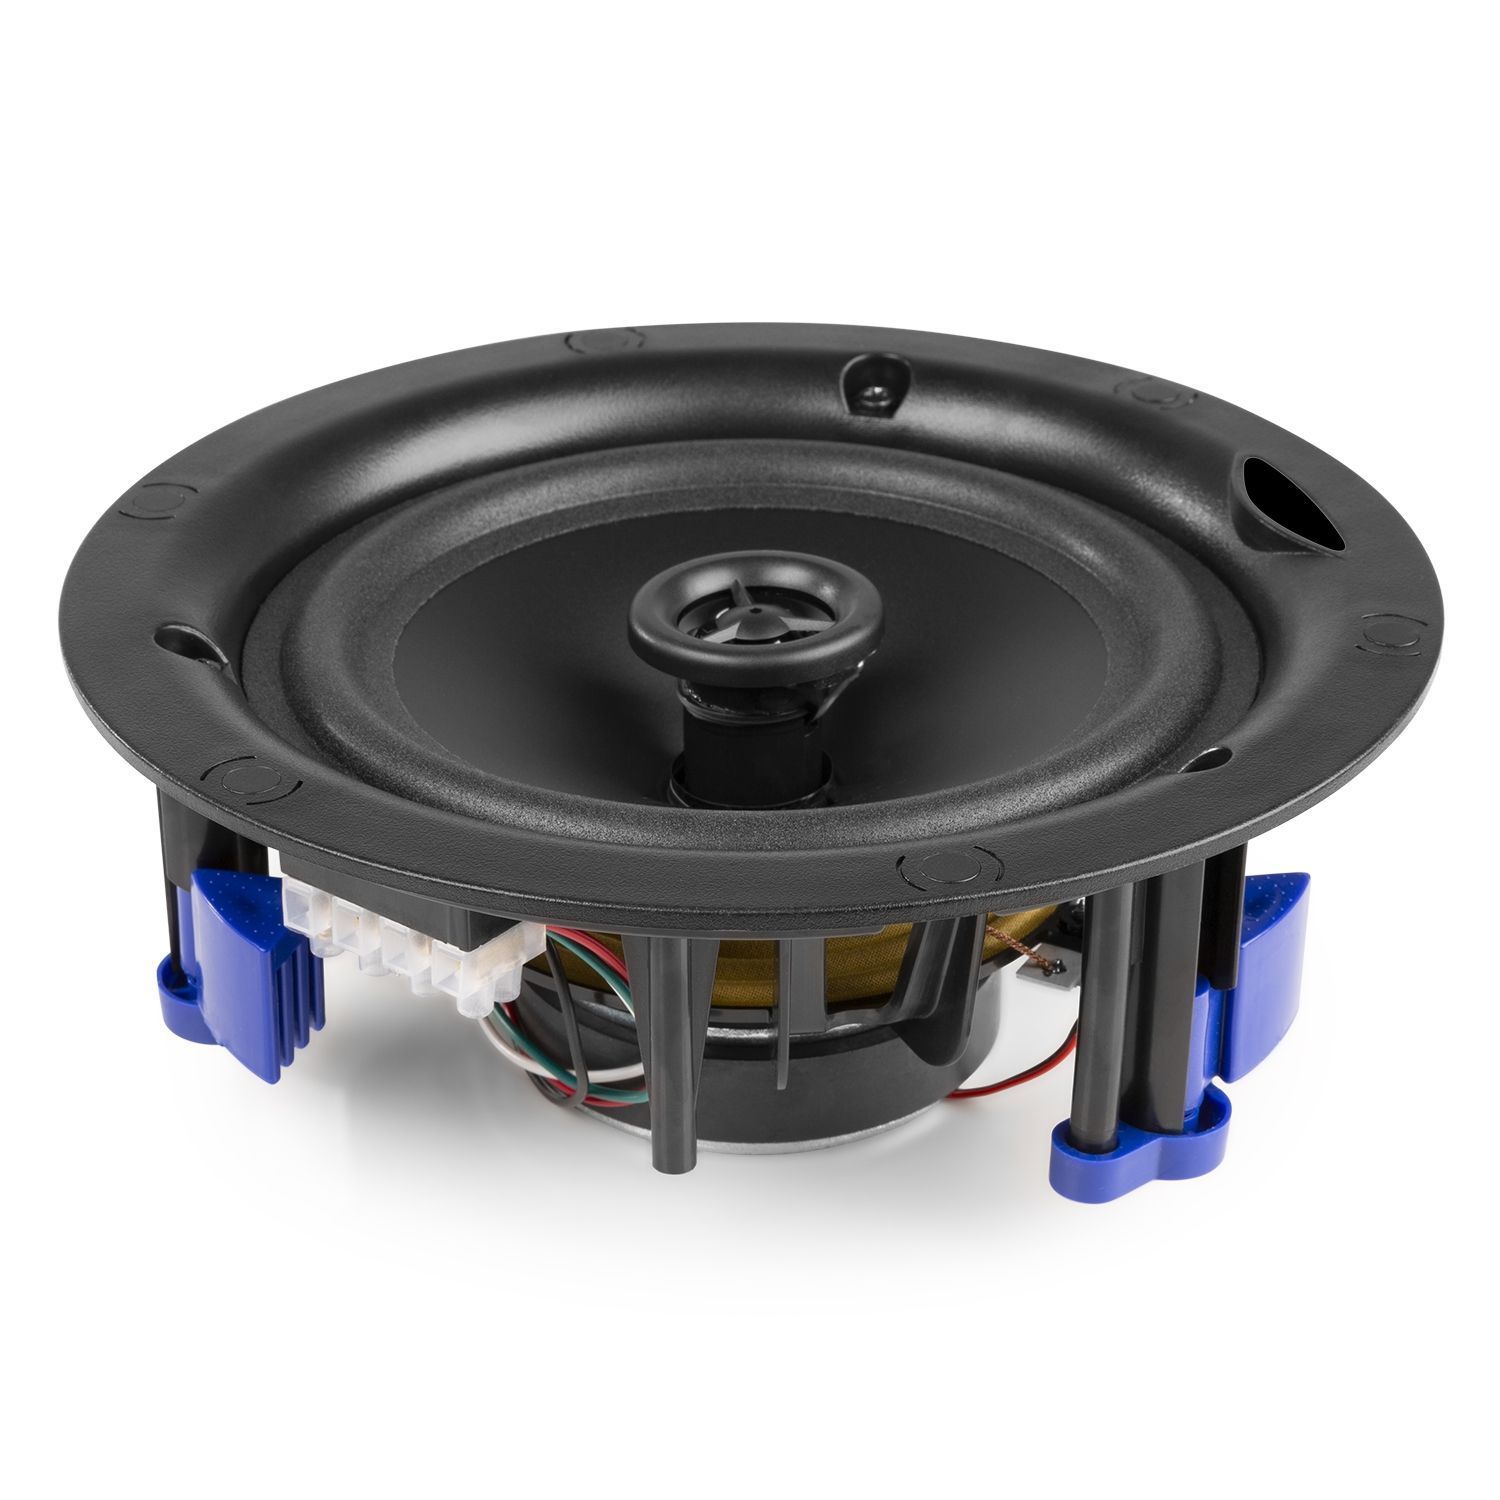 Power dynamics 100 volt speakers|installatie speakers|retourdeals